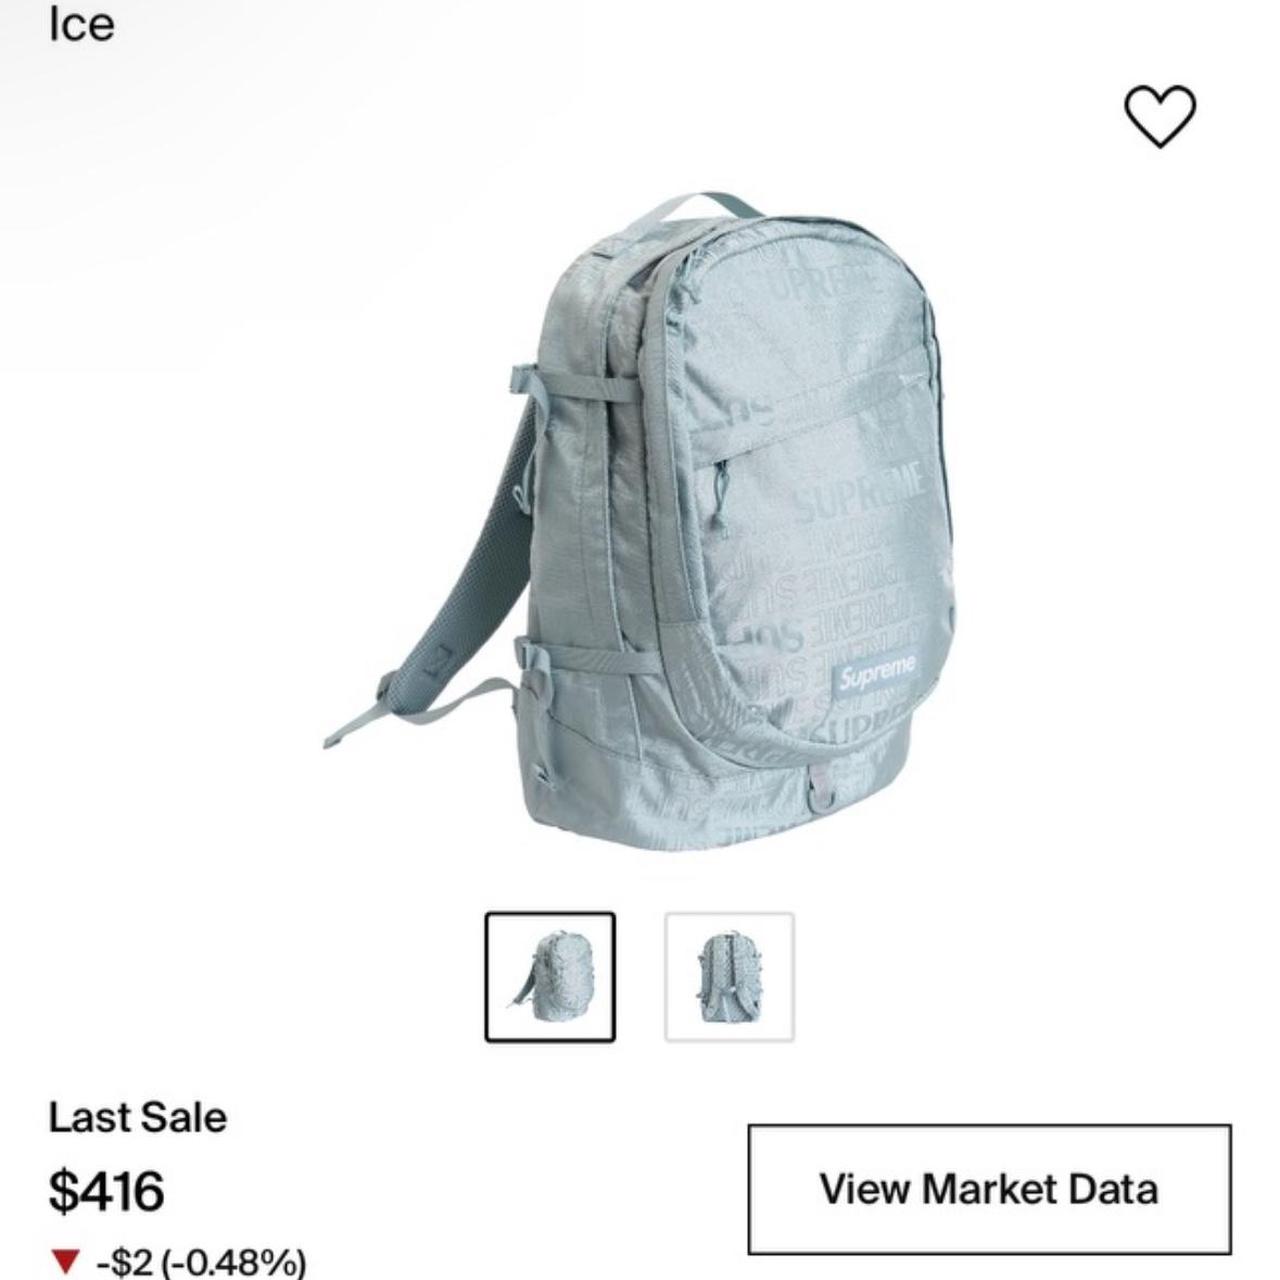 Blue supreme-backpack - Depop